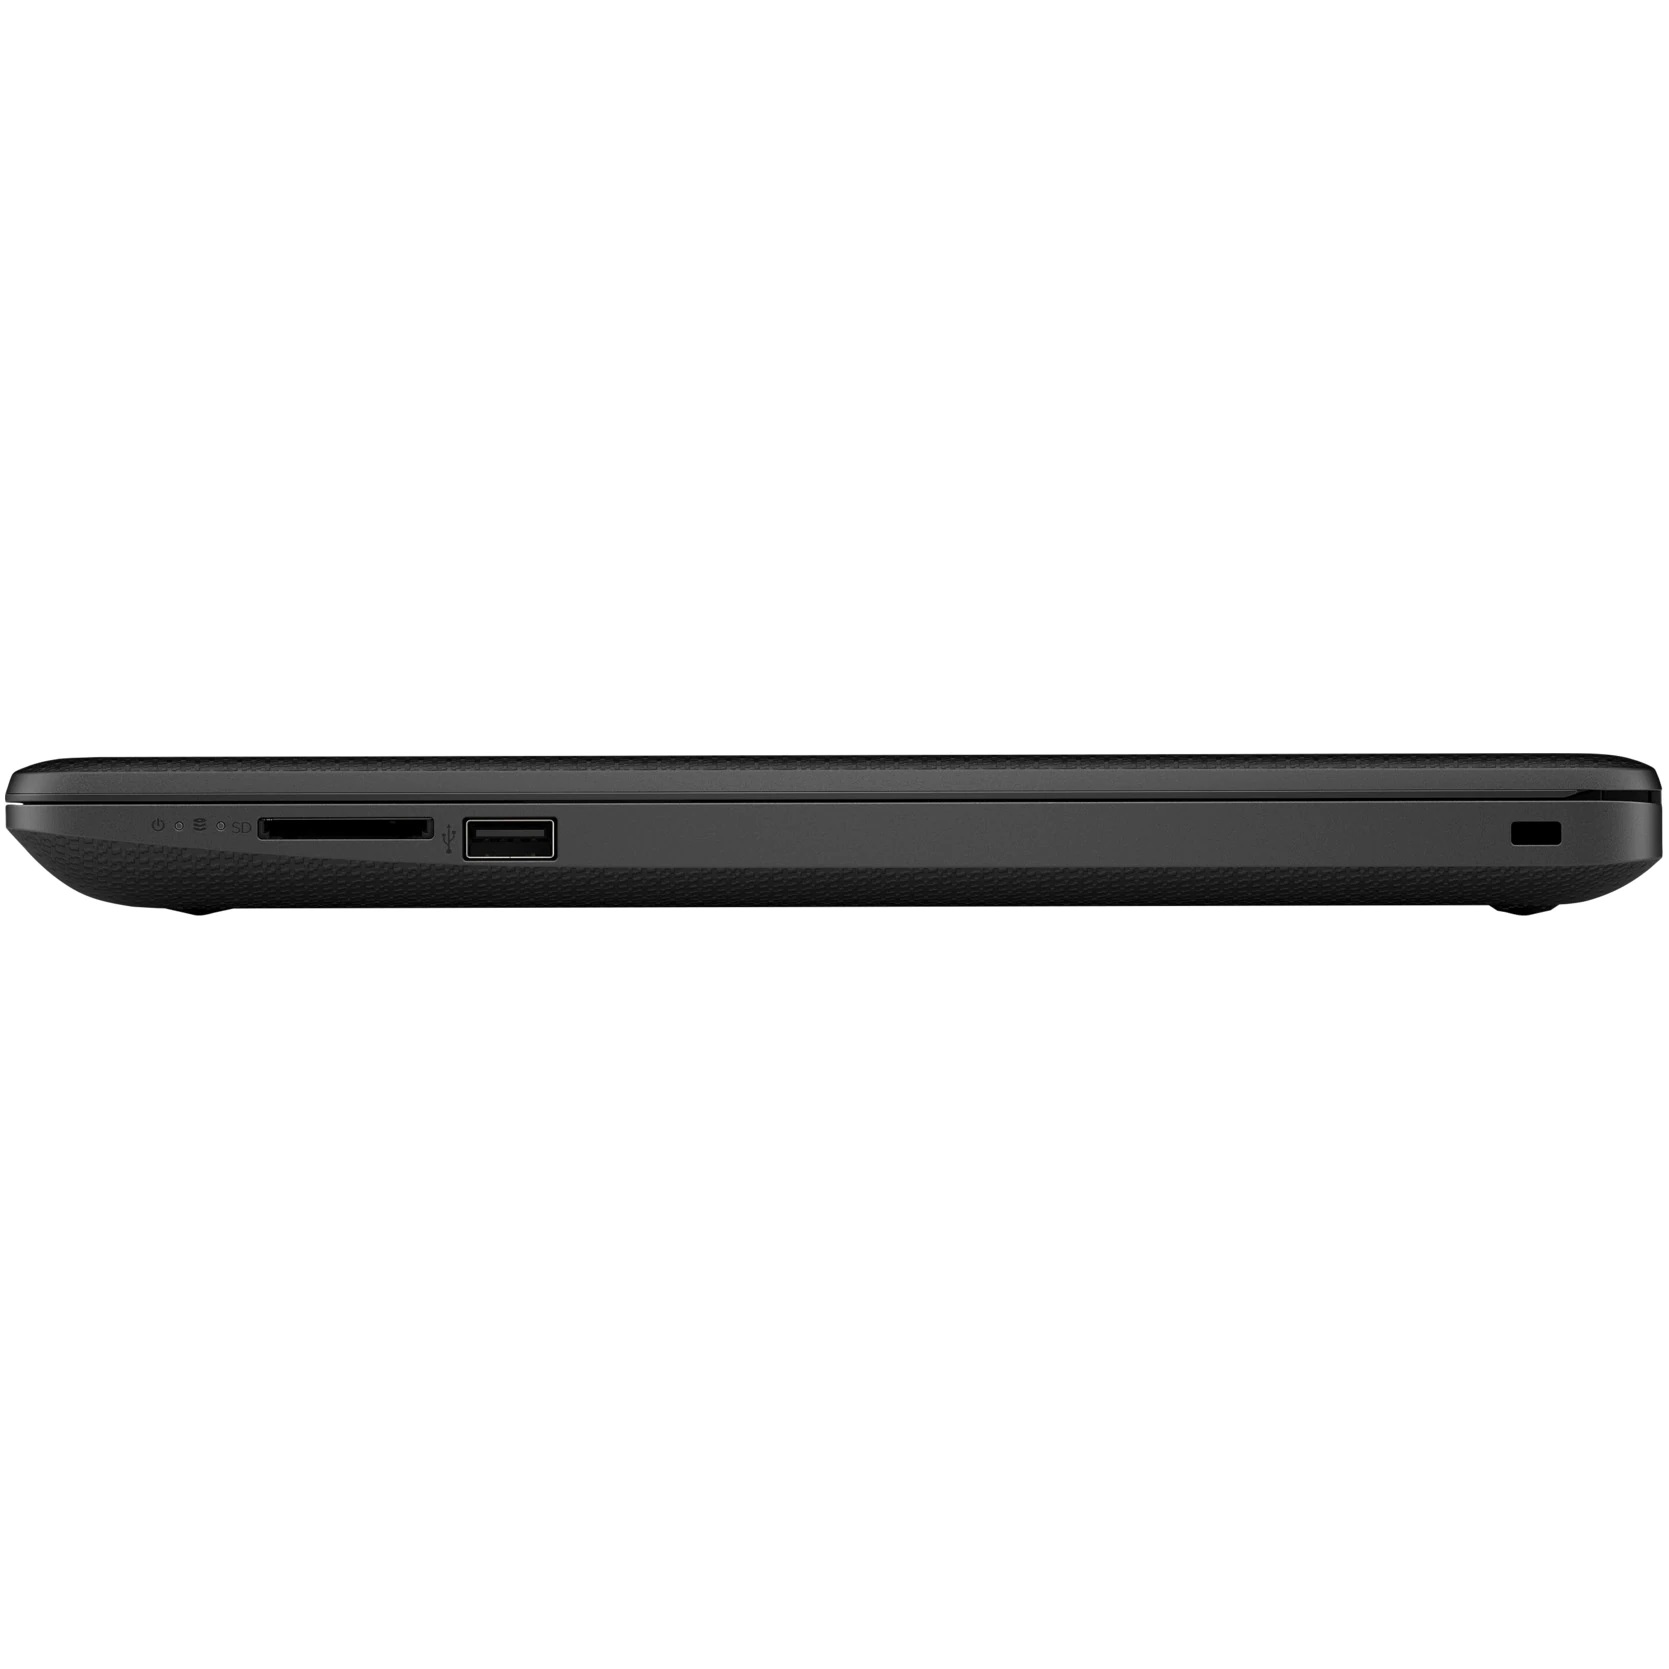 لپ تاپ 15 اینچی اچ پی مدل 15db1100ny - J